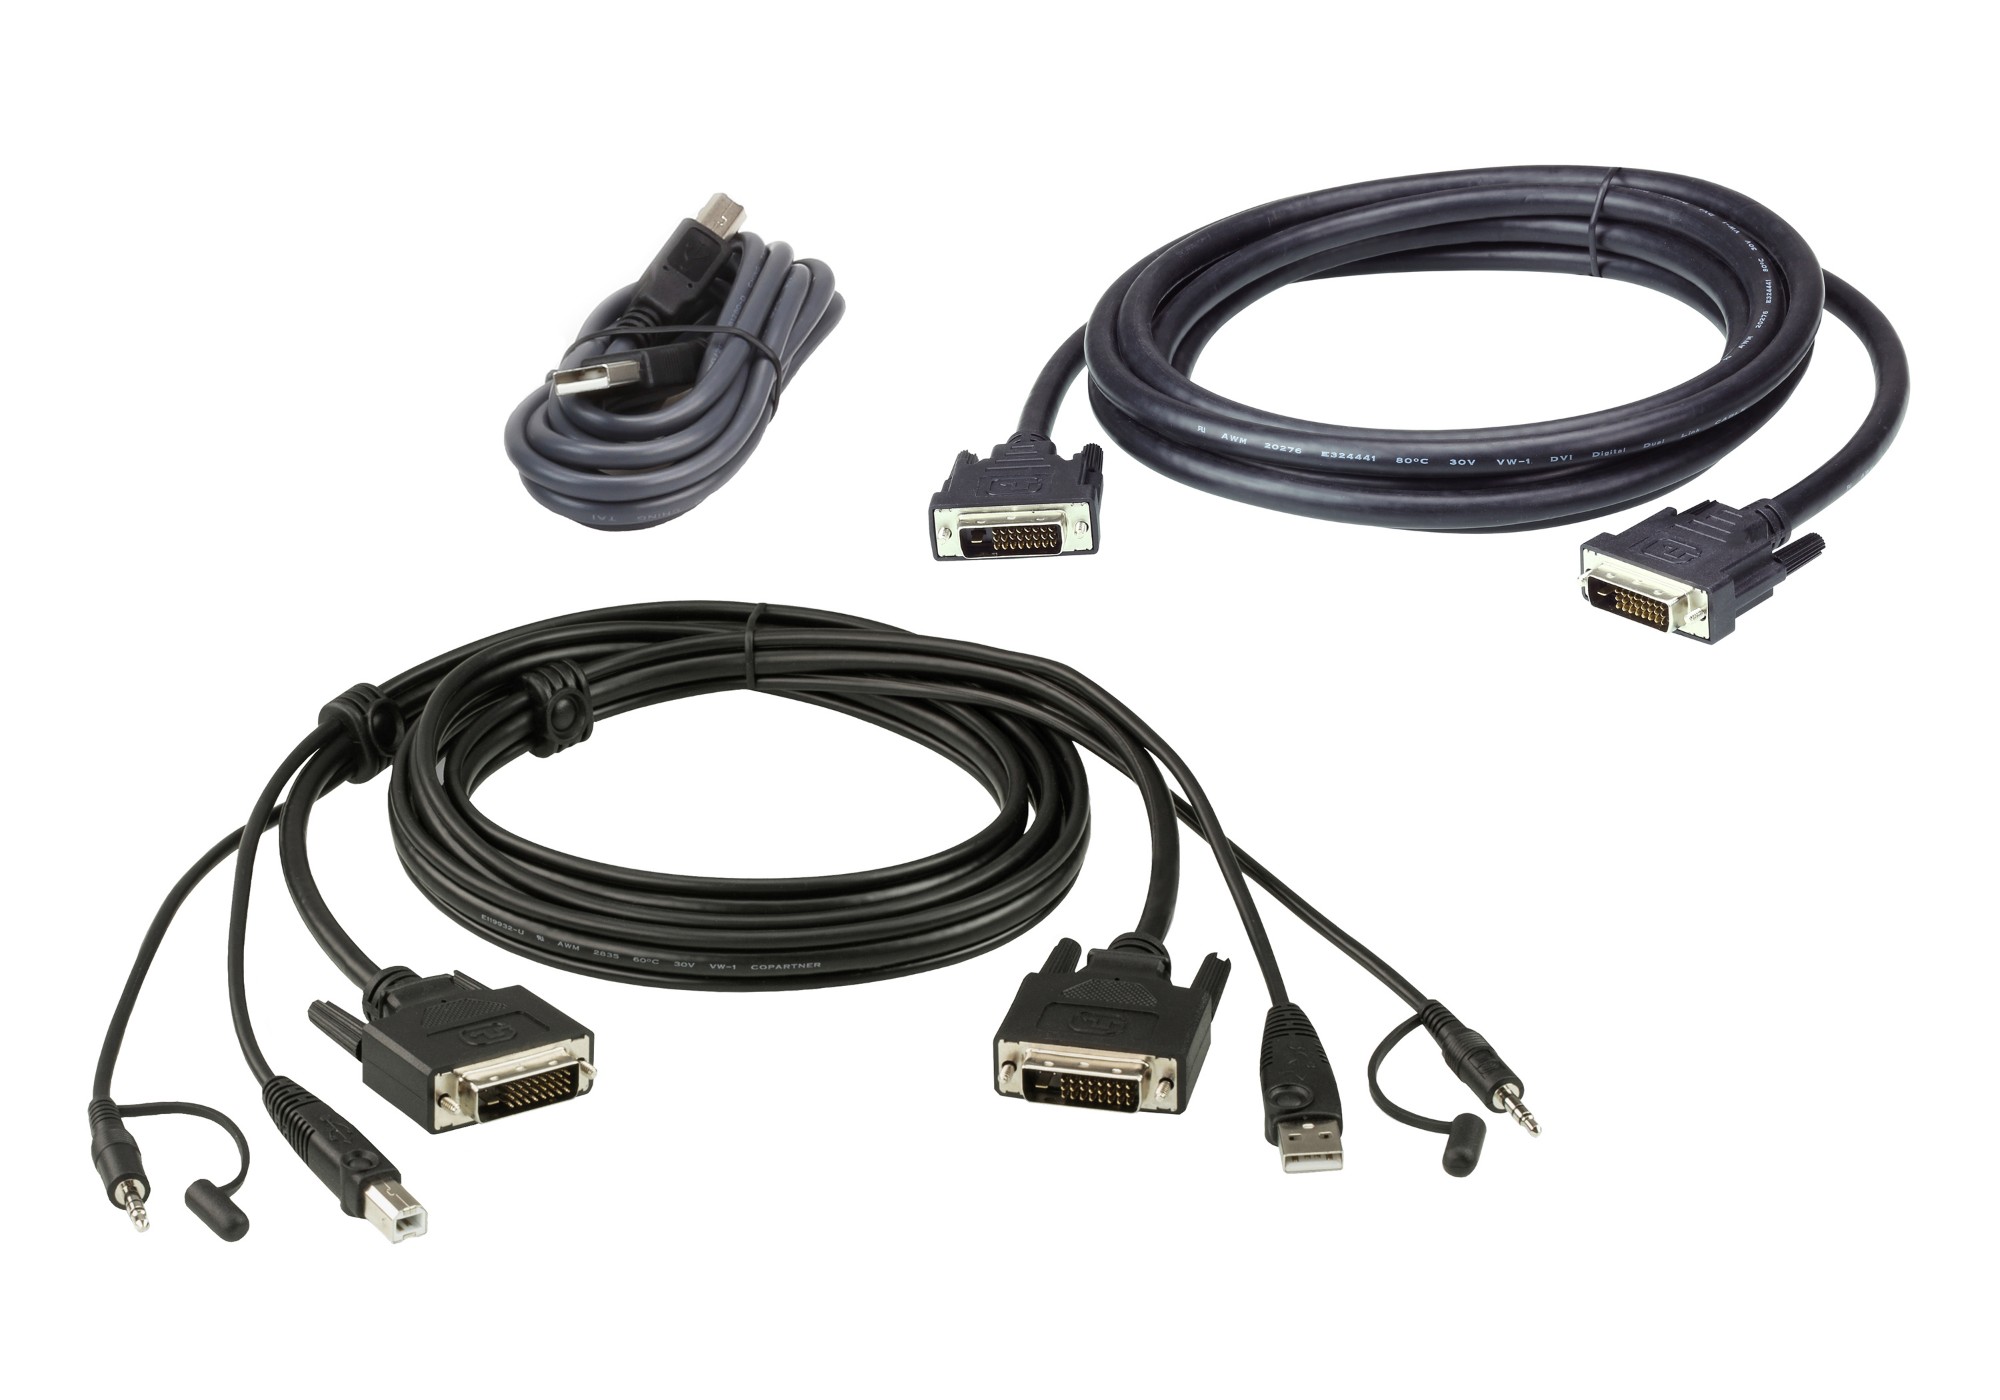 ATEN 1,8 m USB DVI-D Dual Link Dual Display Secure KVM Cable Kit